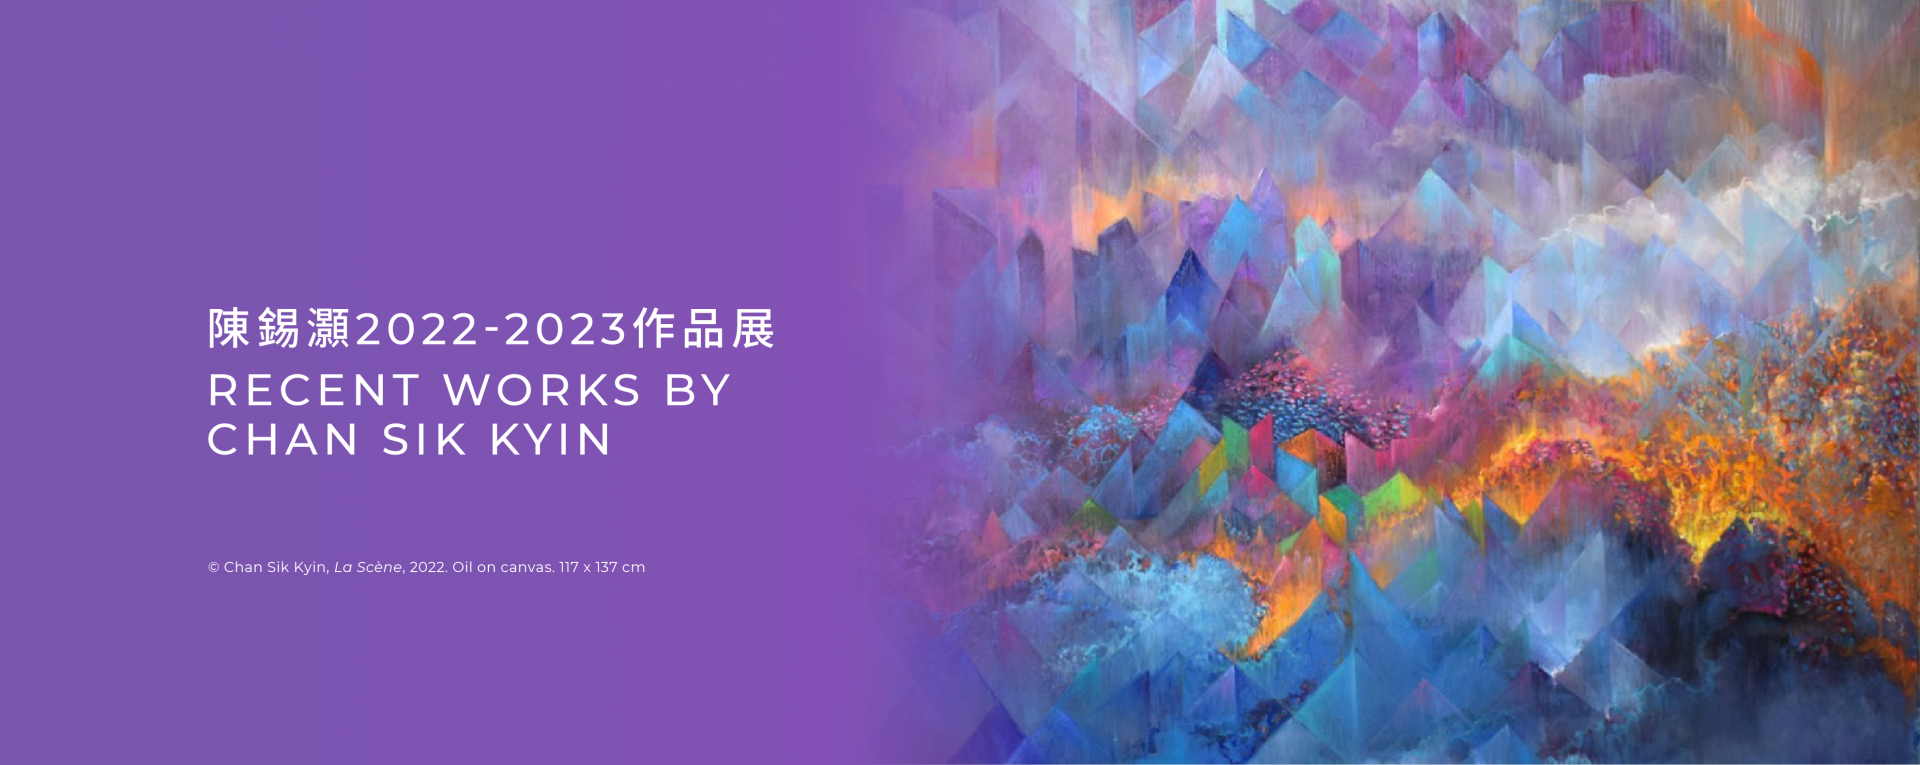 陳錫灝2022 – 2023作品展——網上展出四十二幅油畫近作